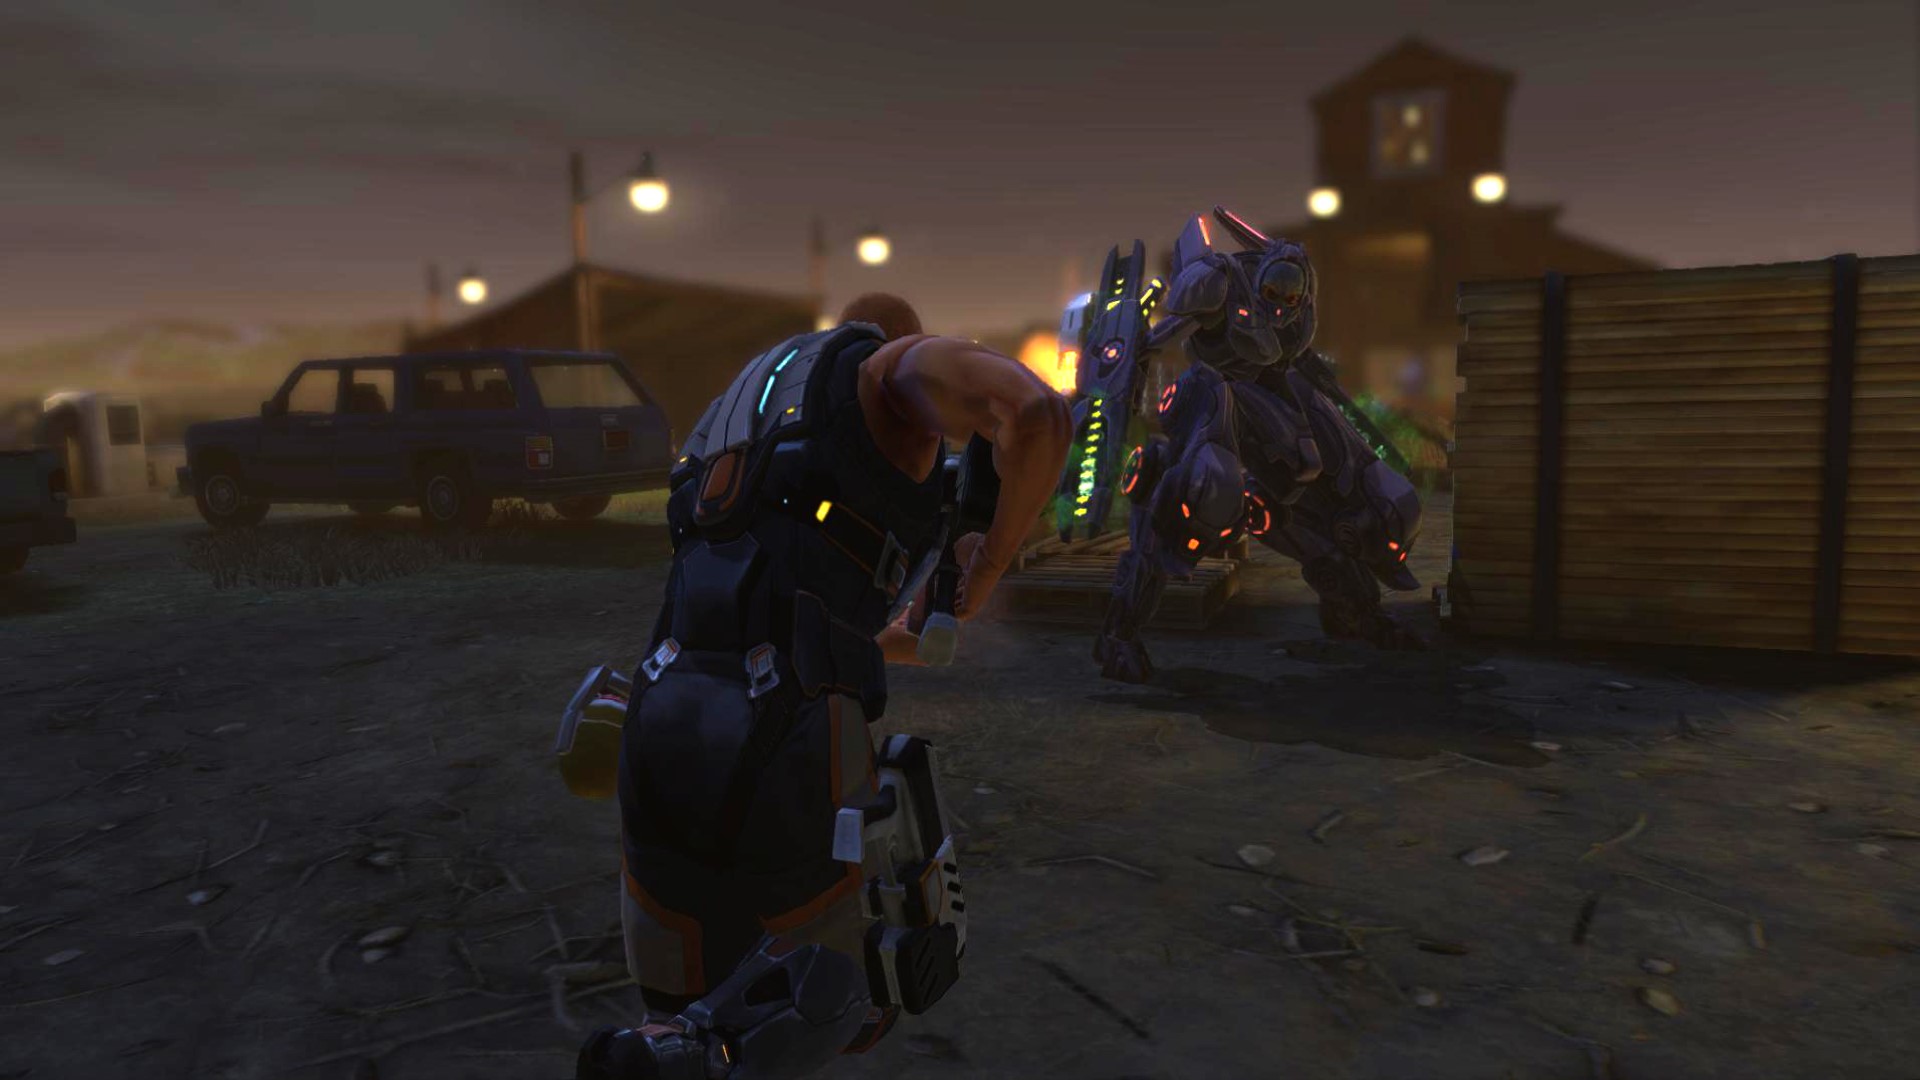 Beste mobile strategispill: XCOM: fiende innen. Bildet viser to personer i futuristisk rustning som holder våpen